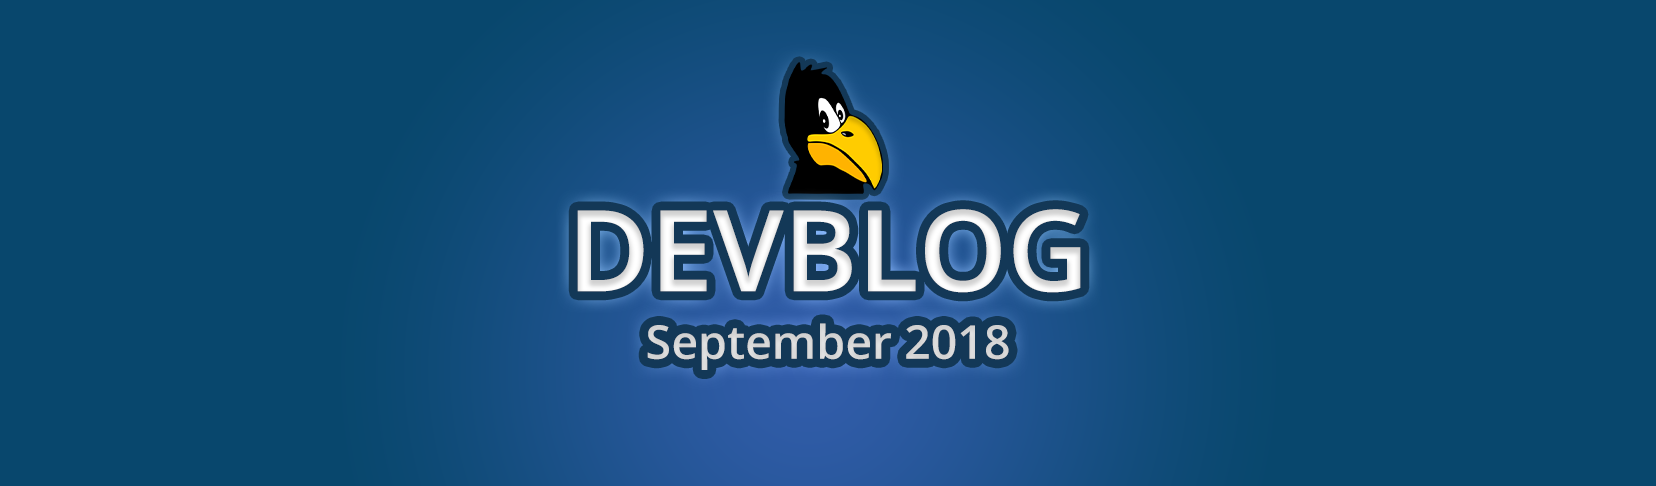 Devblog September 2018